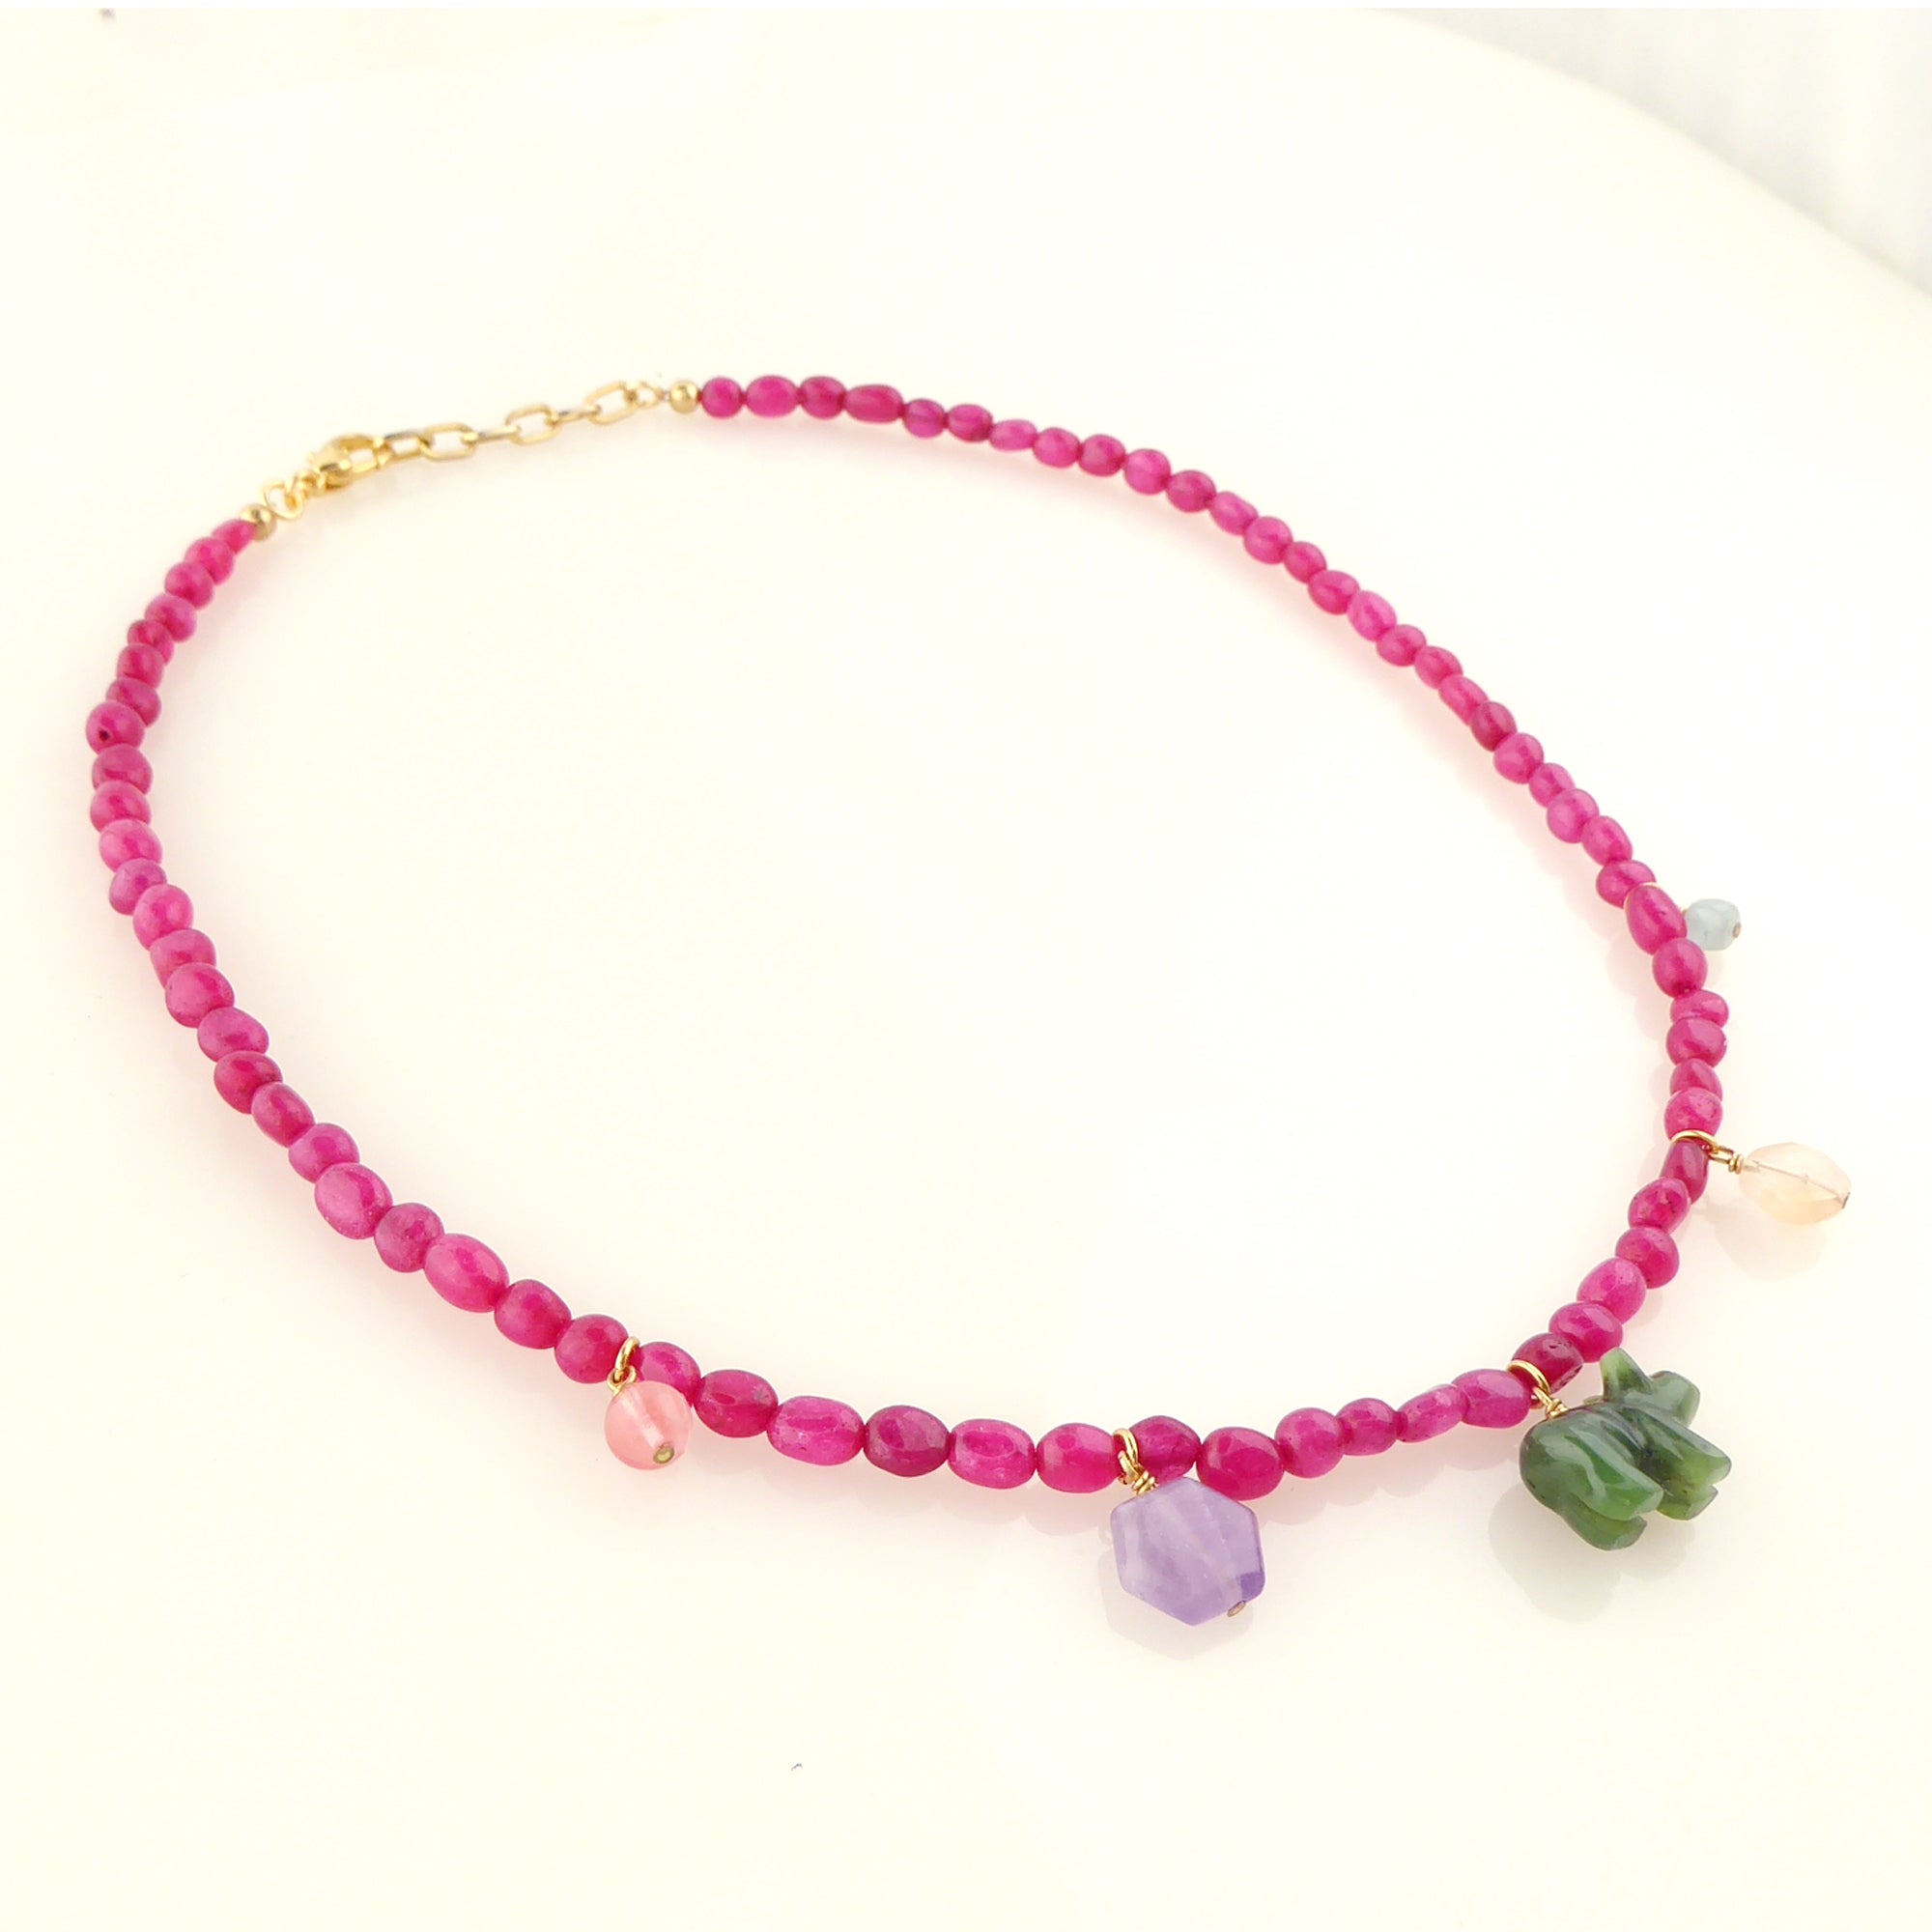 Candy stone necklace by Jenny Dayco 2